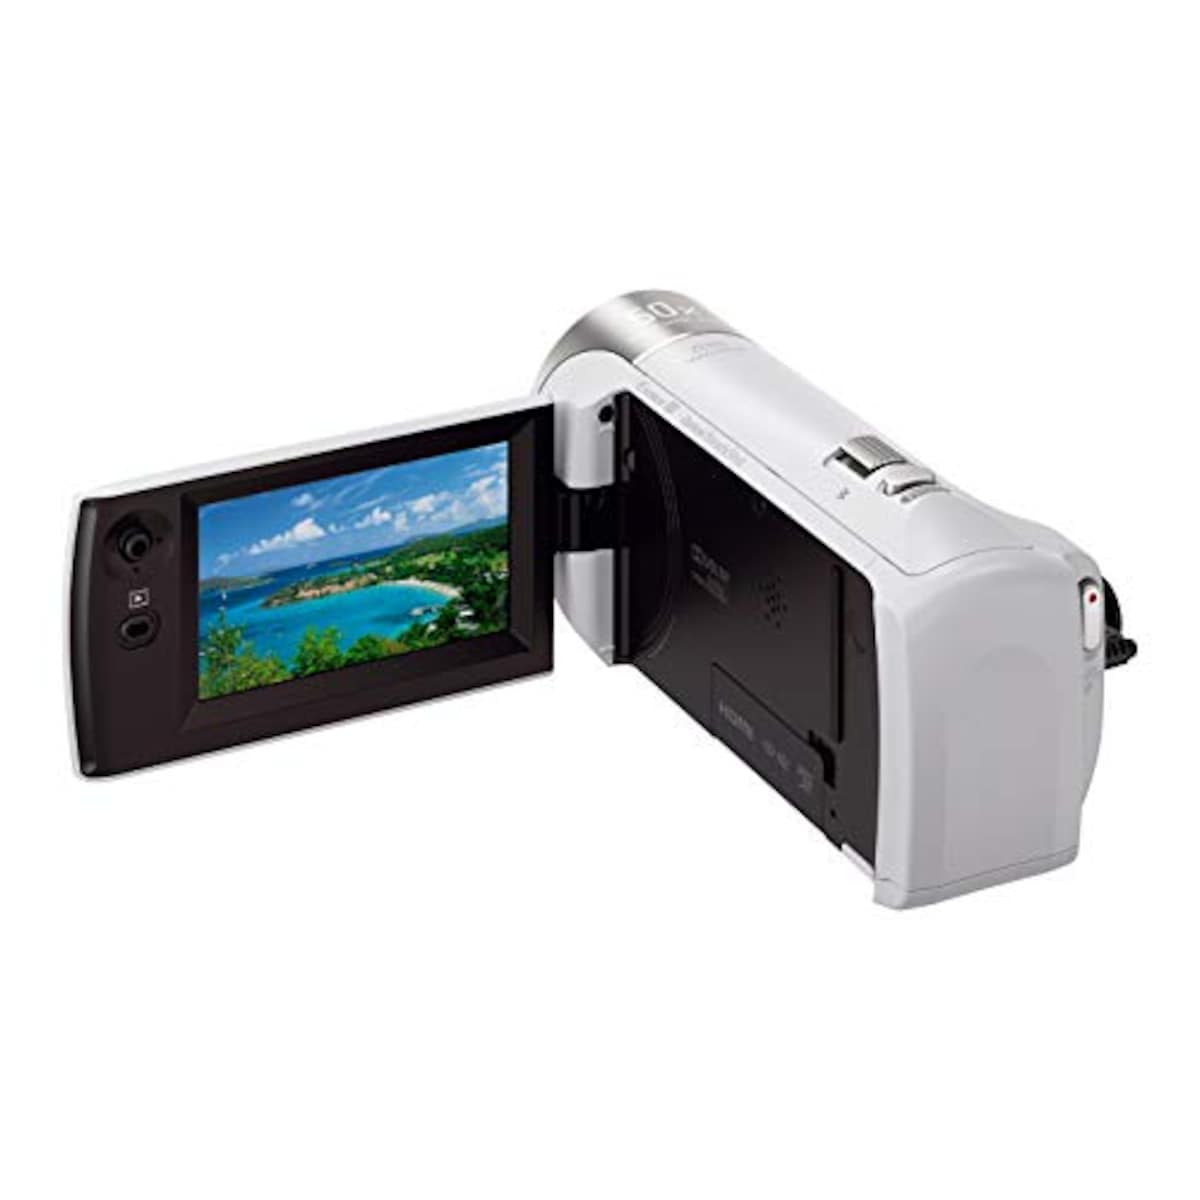  【CX470 と ケース&ストラップ セット】 大切なカメラをキズや汚れからガードしたい方に。HDR-CX470 ホワイト + LCS-MCS2 ライトブラウン画像7 